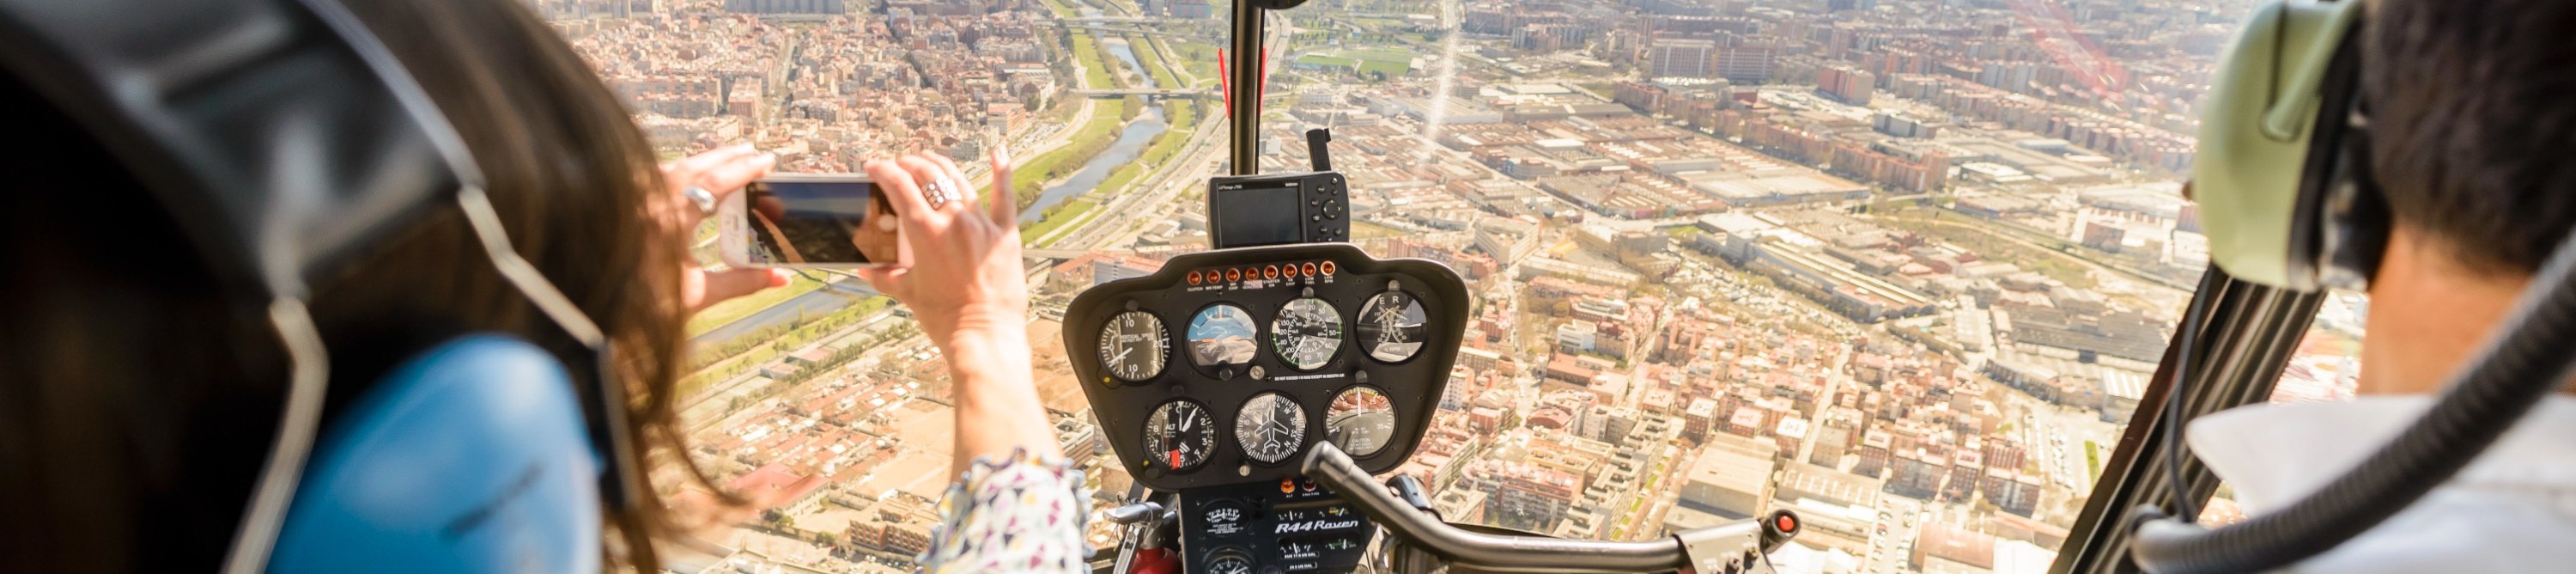 巴塞羅那全景直升機飛行體驗